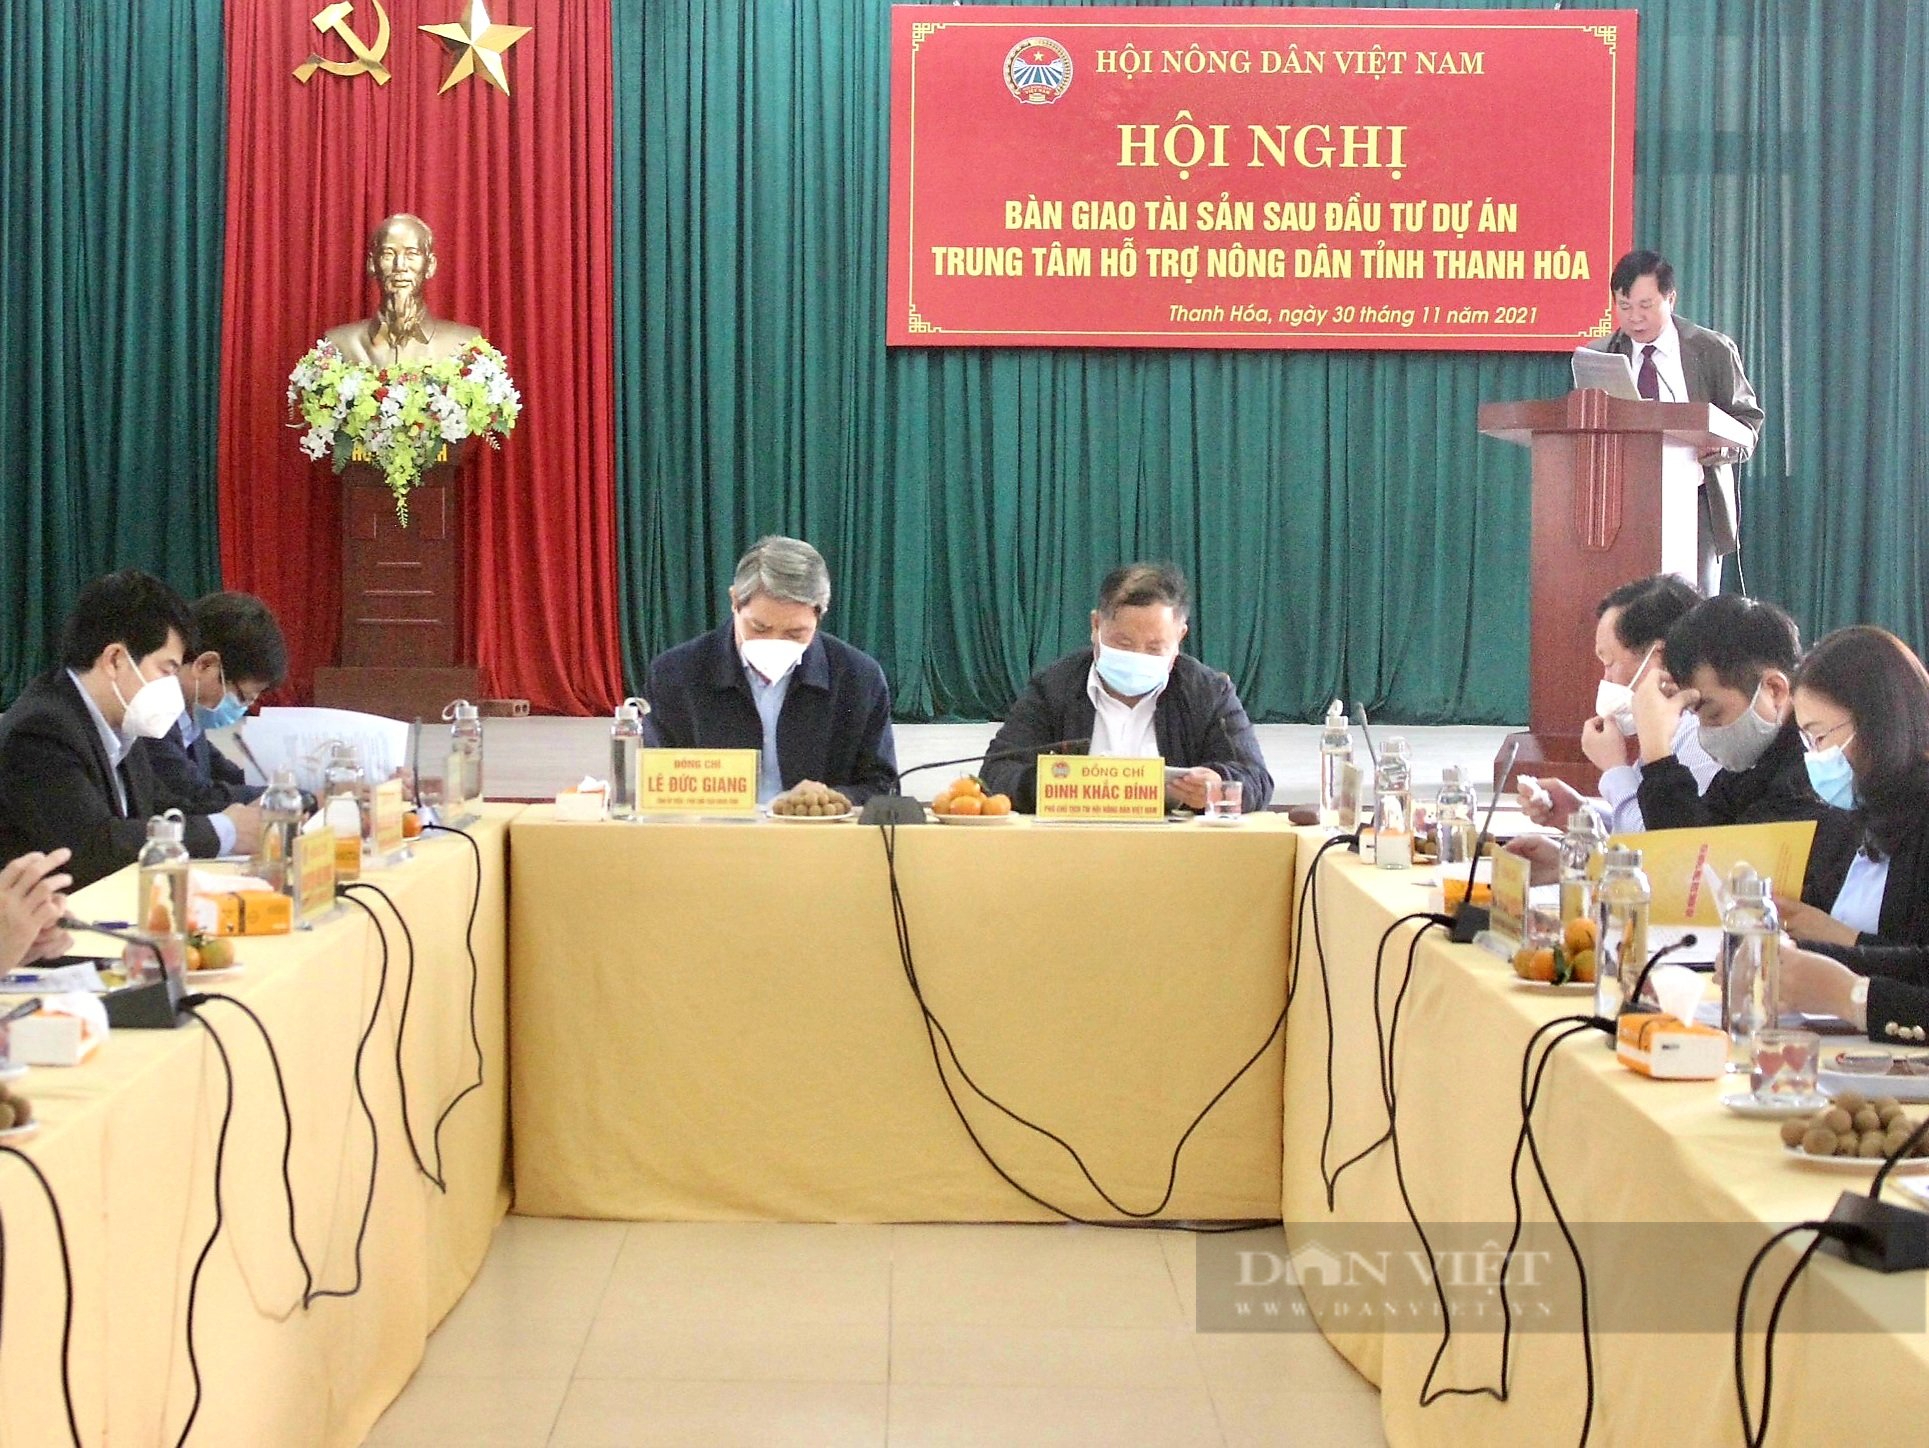 Trung ương Hội Nông dân Việt Nam bàn giao tài sản sau dự án Trung tâm Hỗ trợ nông dân tỉnh Thanh Hóa - Ảnh 1.